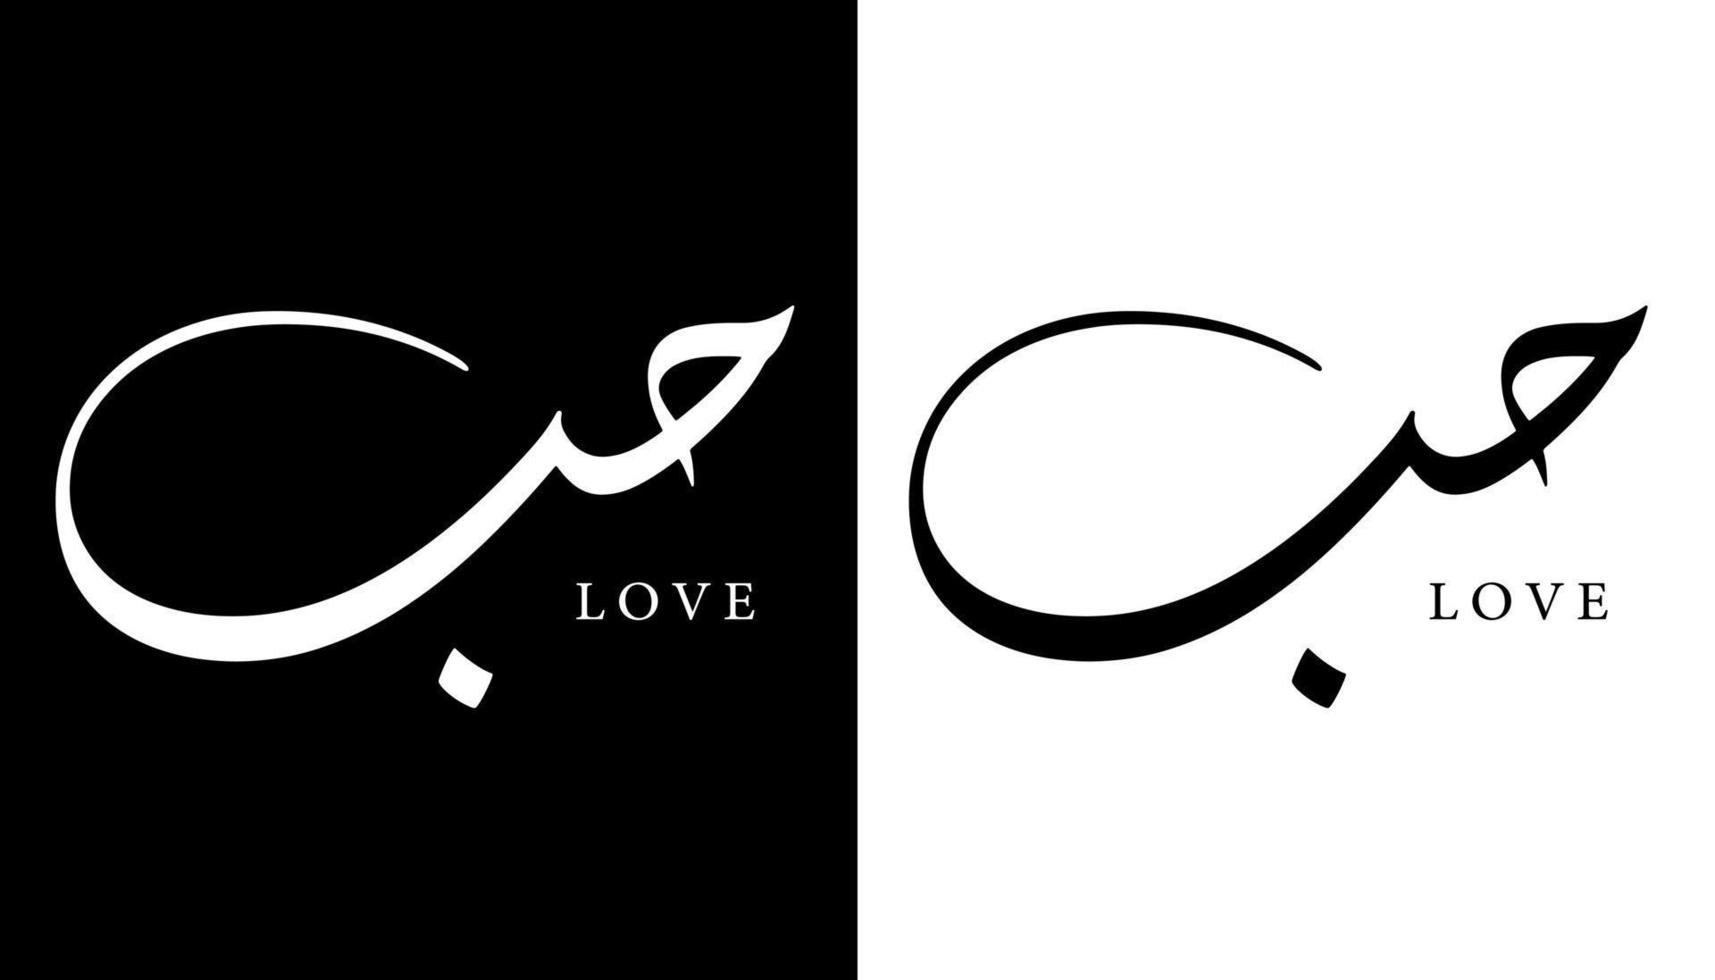 nome della calligrafia araba tradotto 'amore' lettere arabe alfabeto font lettering logo islamico illustrazione vettoriale